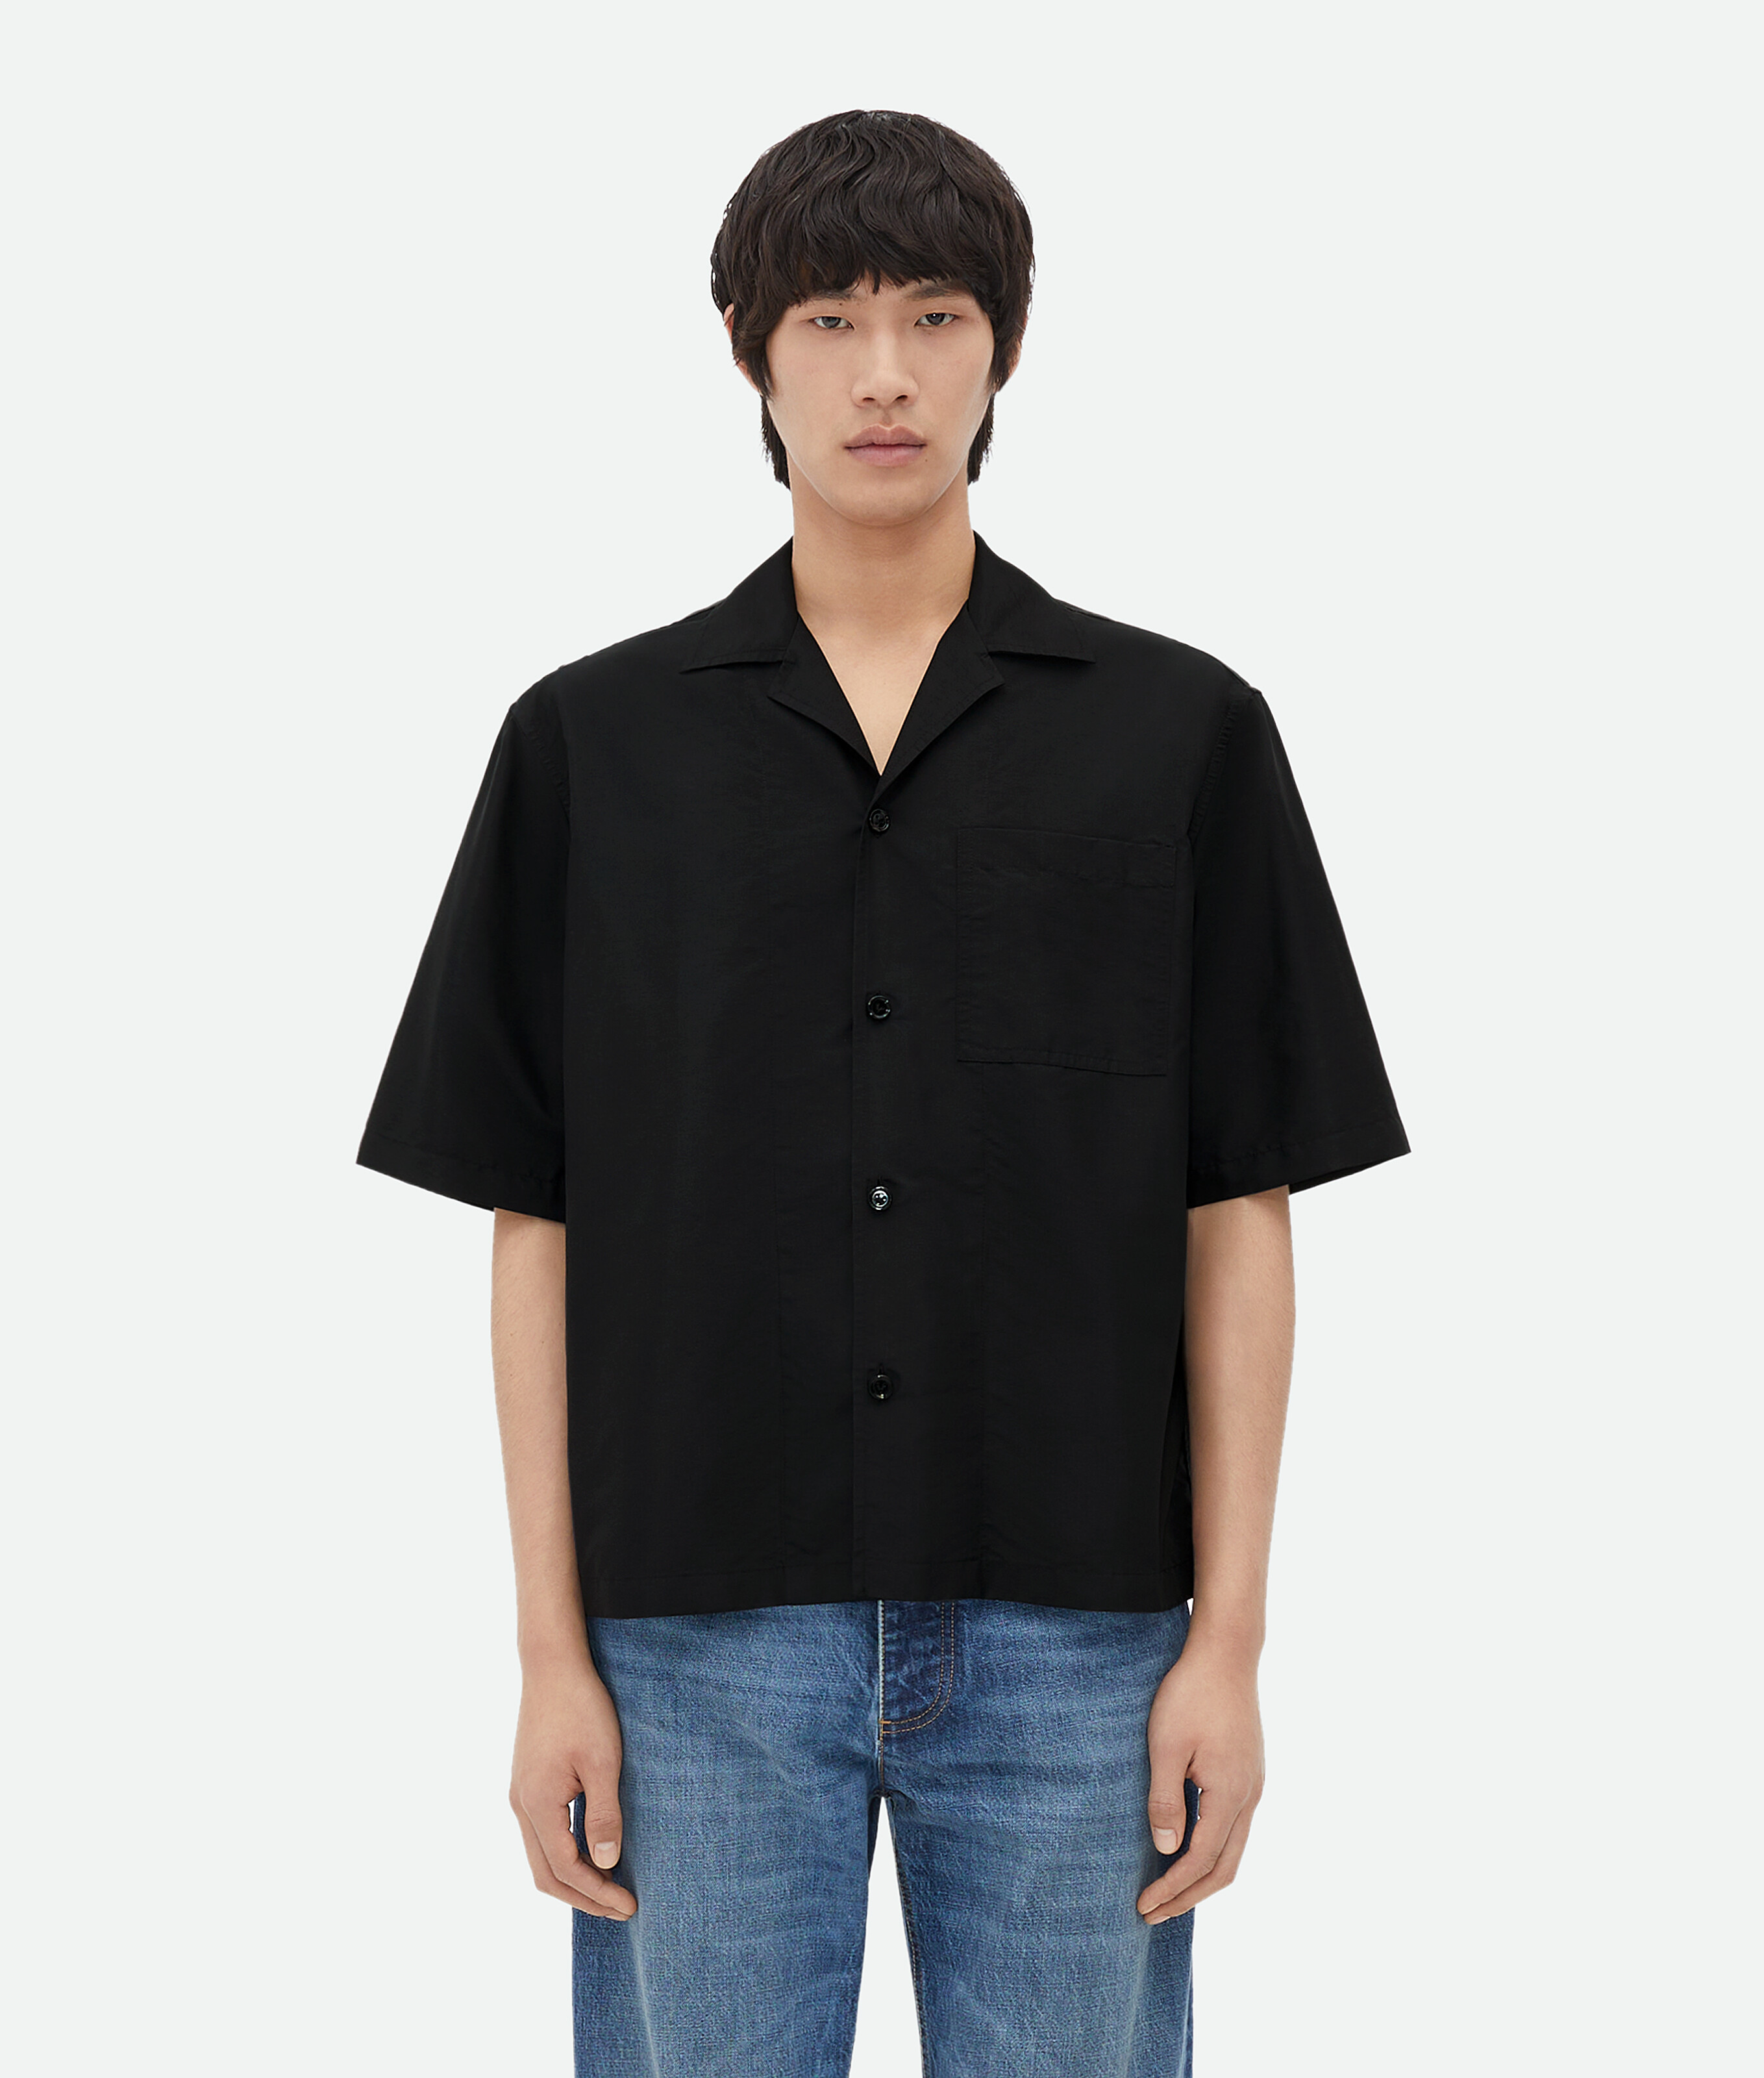 ブラック半袖 テクニカルナイロン シャツ| Bottega Veneta® 日本